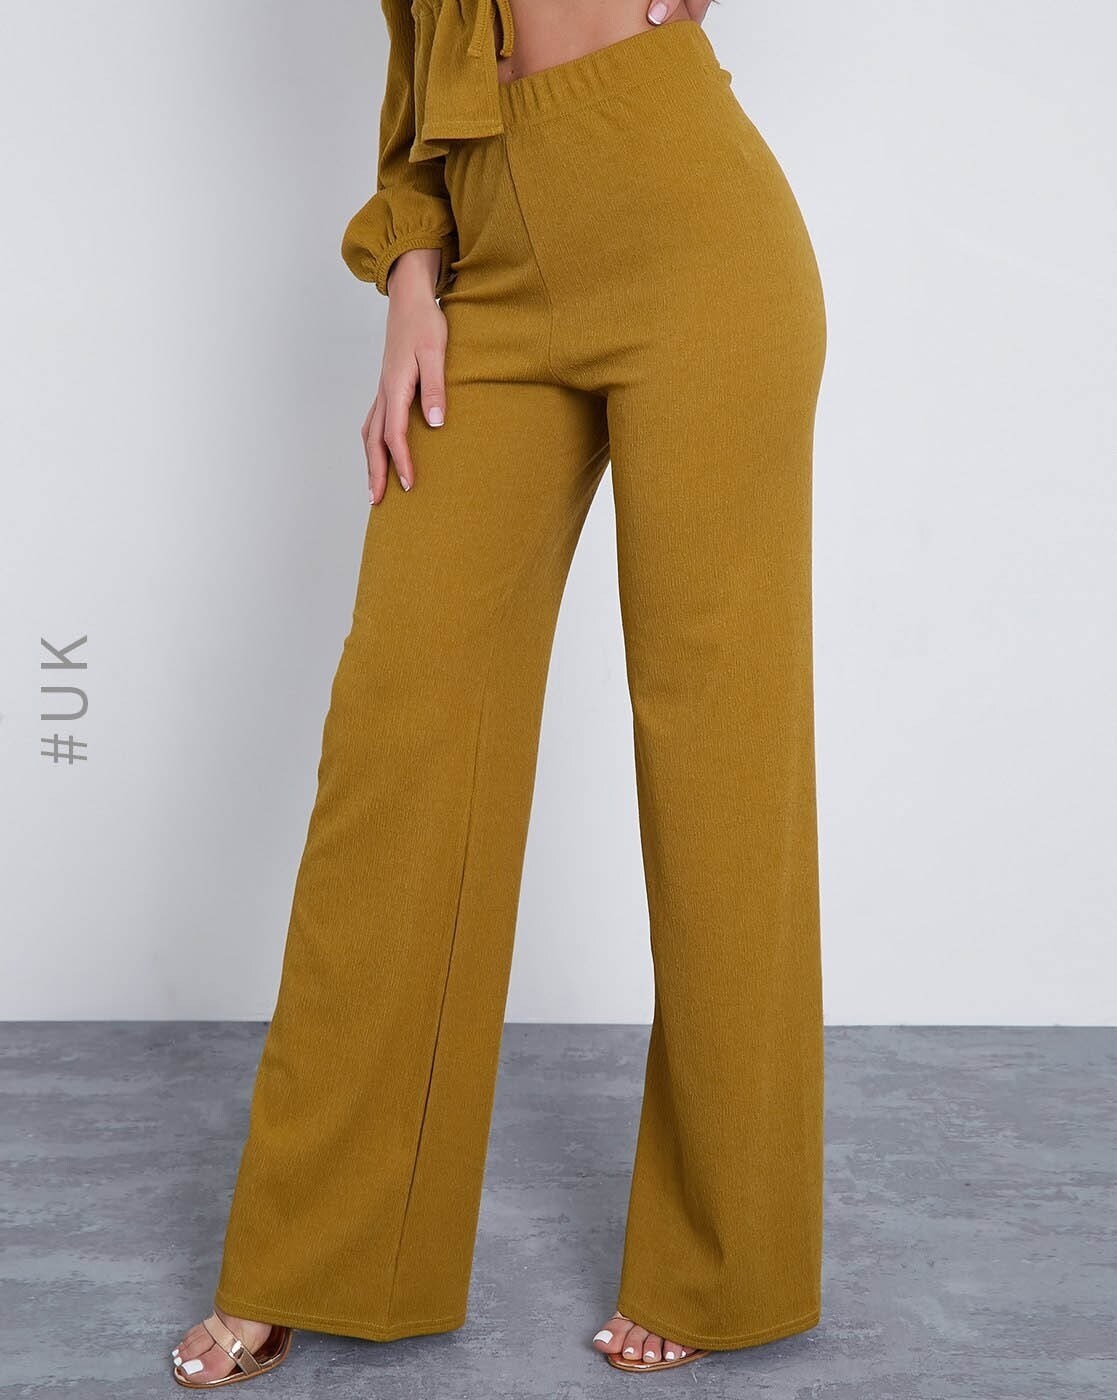 Buy Black Trousers & Pants for Women by Broadstar Online | Ajio.com